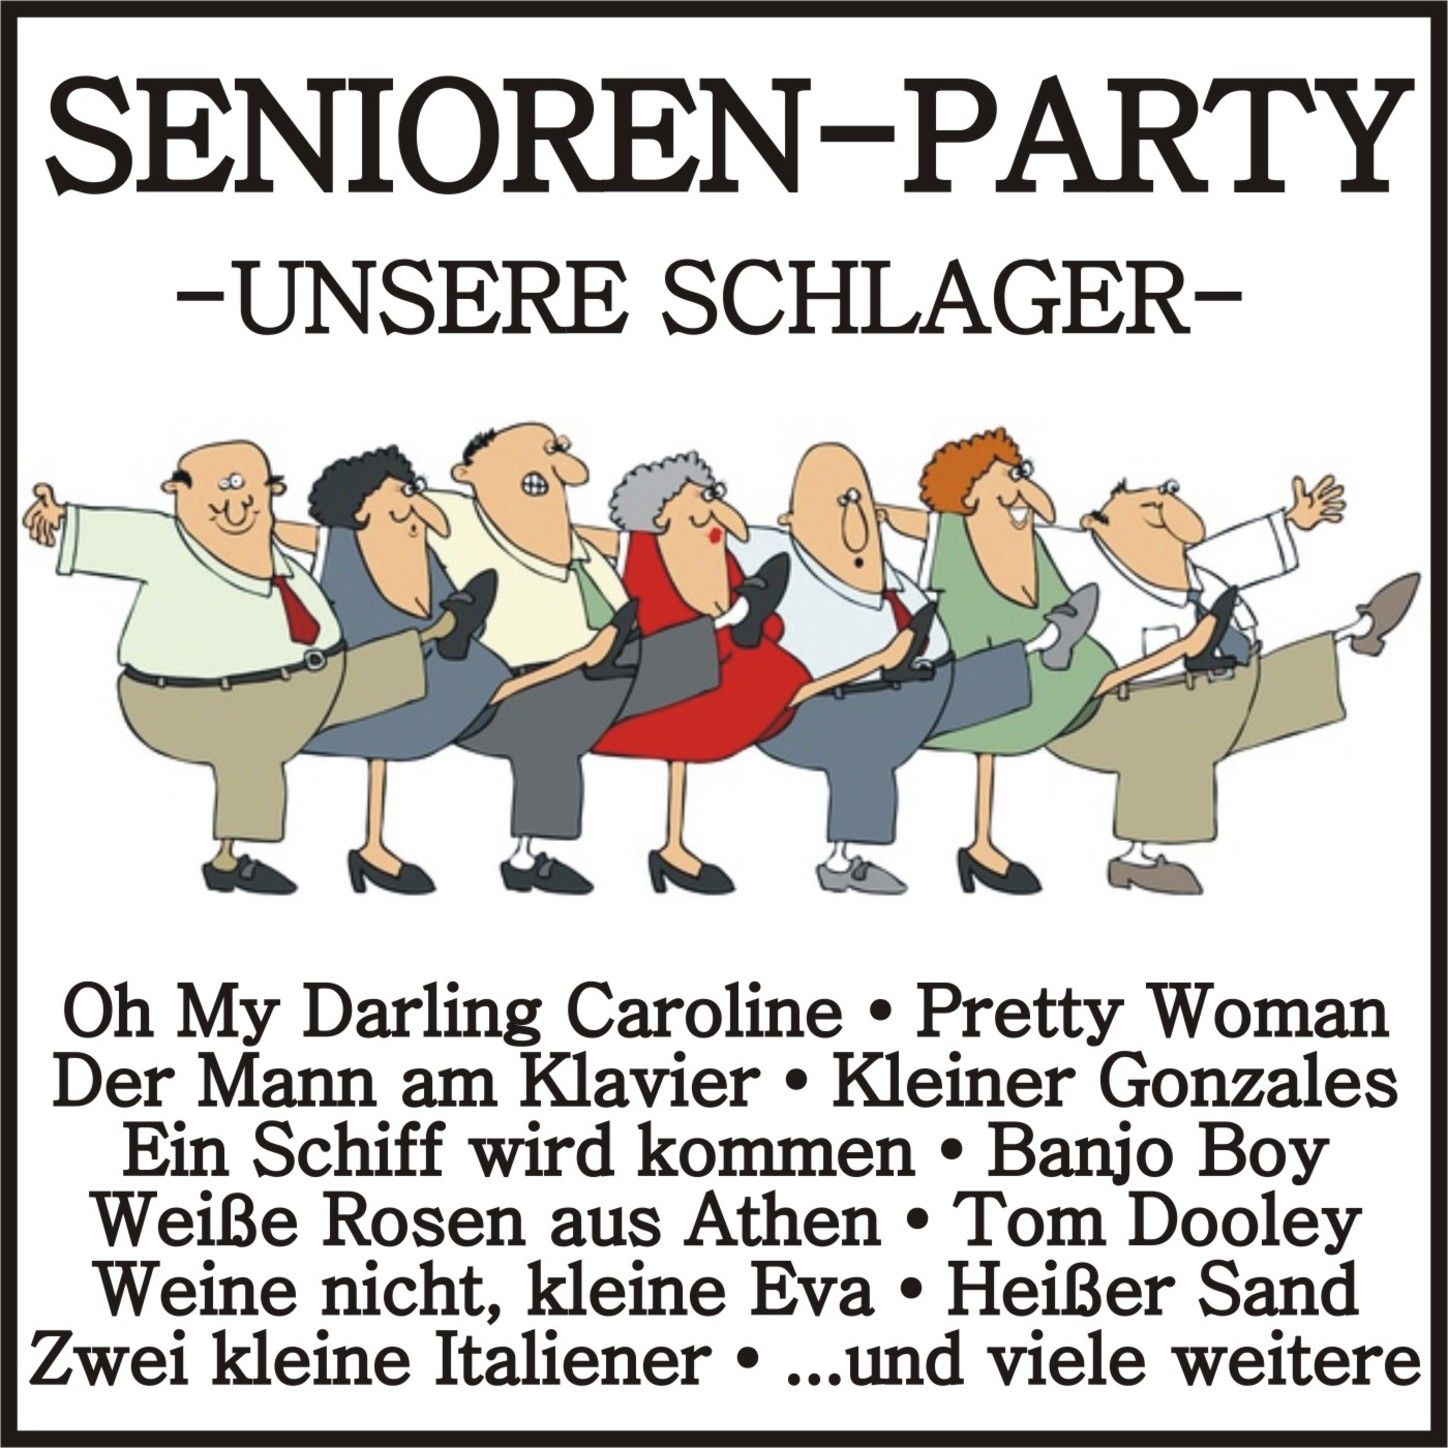 Senioren-Party - Unsere Schlager